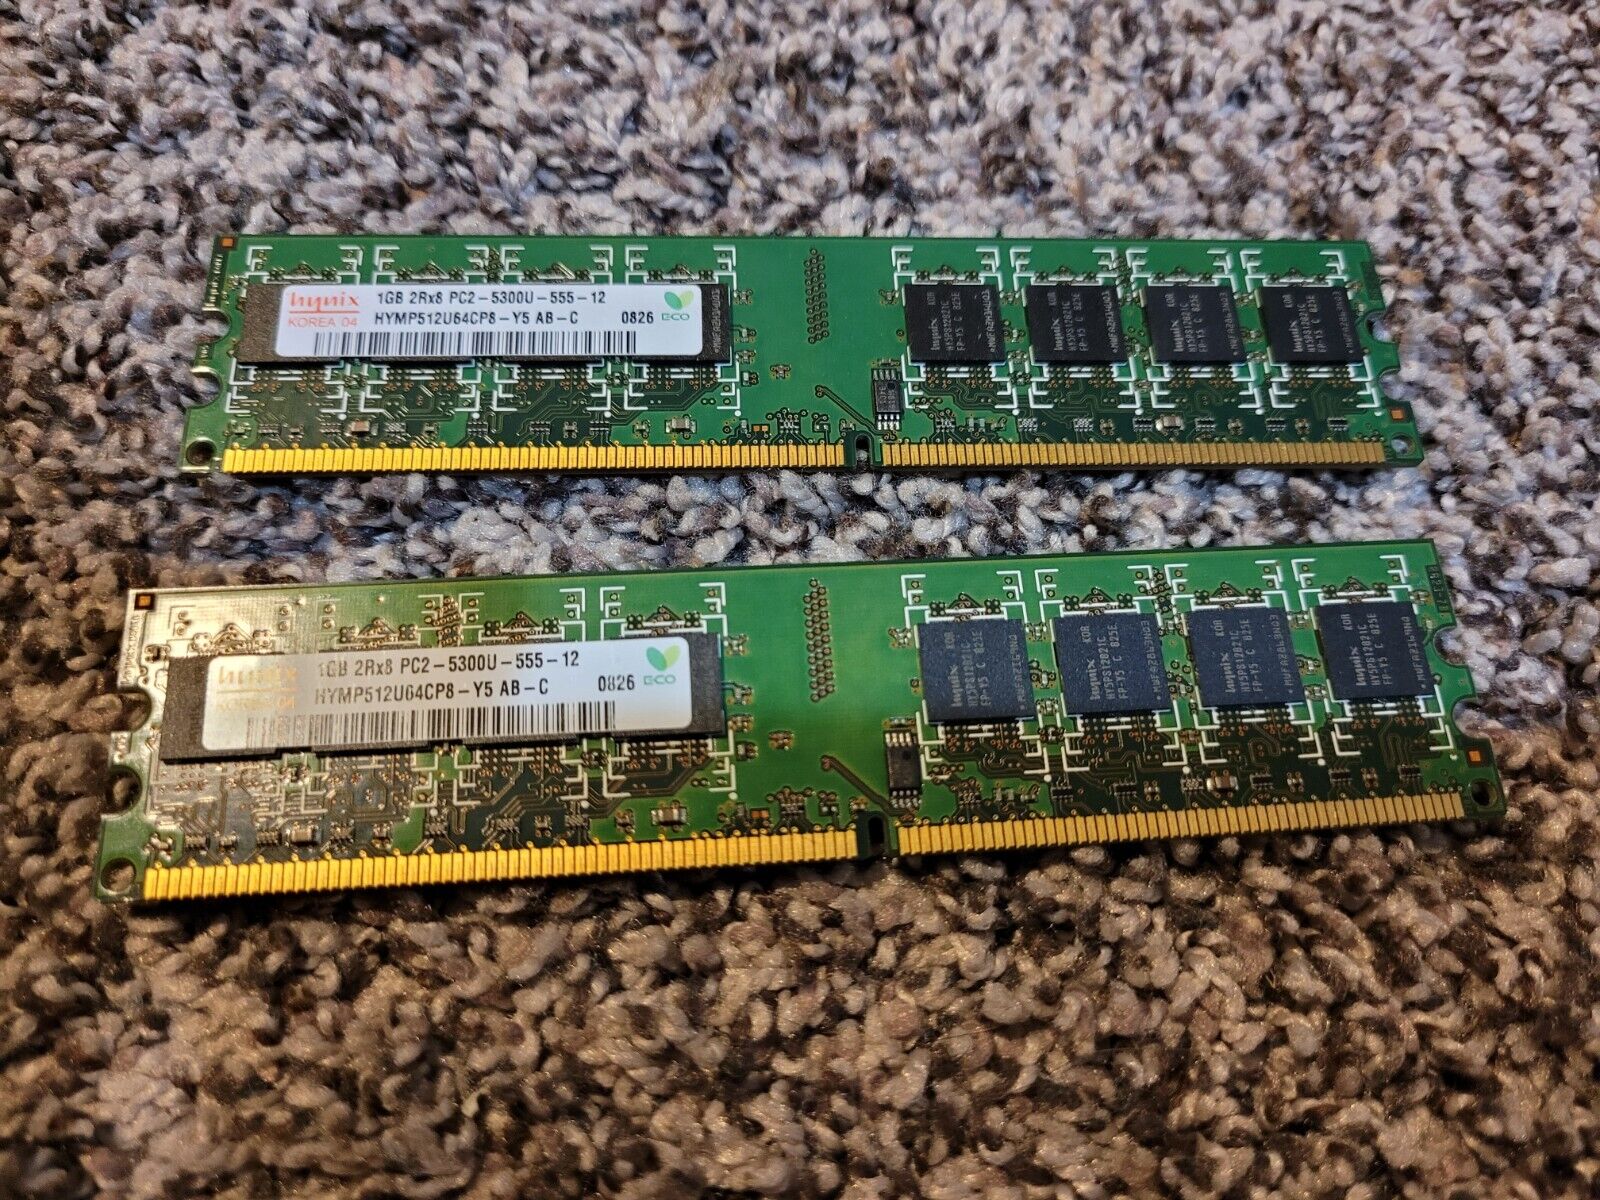 Quantity of Two 1G Hynix HYMP512U64CP8-Y5 AB-C PC2-5300U-555-12 RAM Sticks